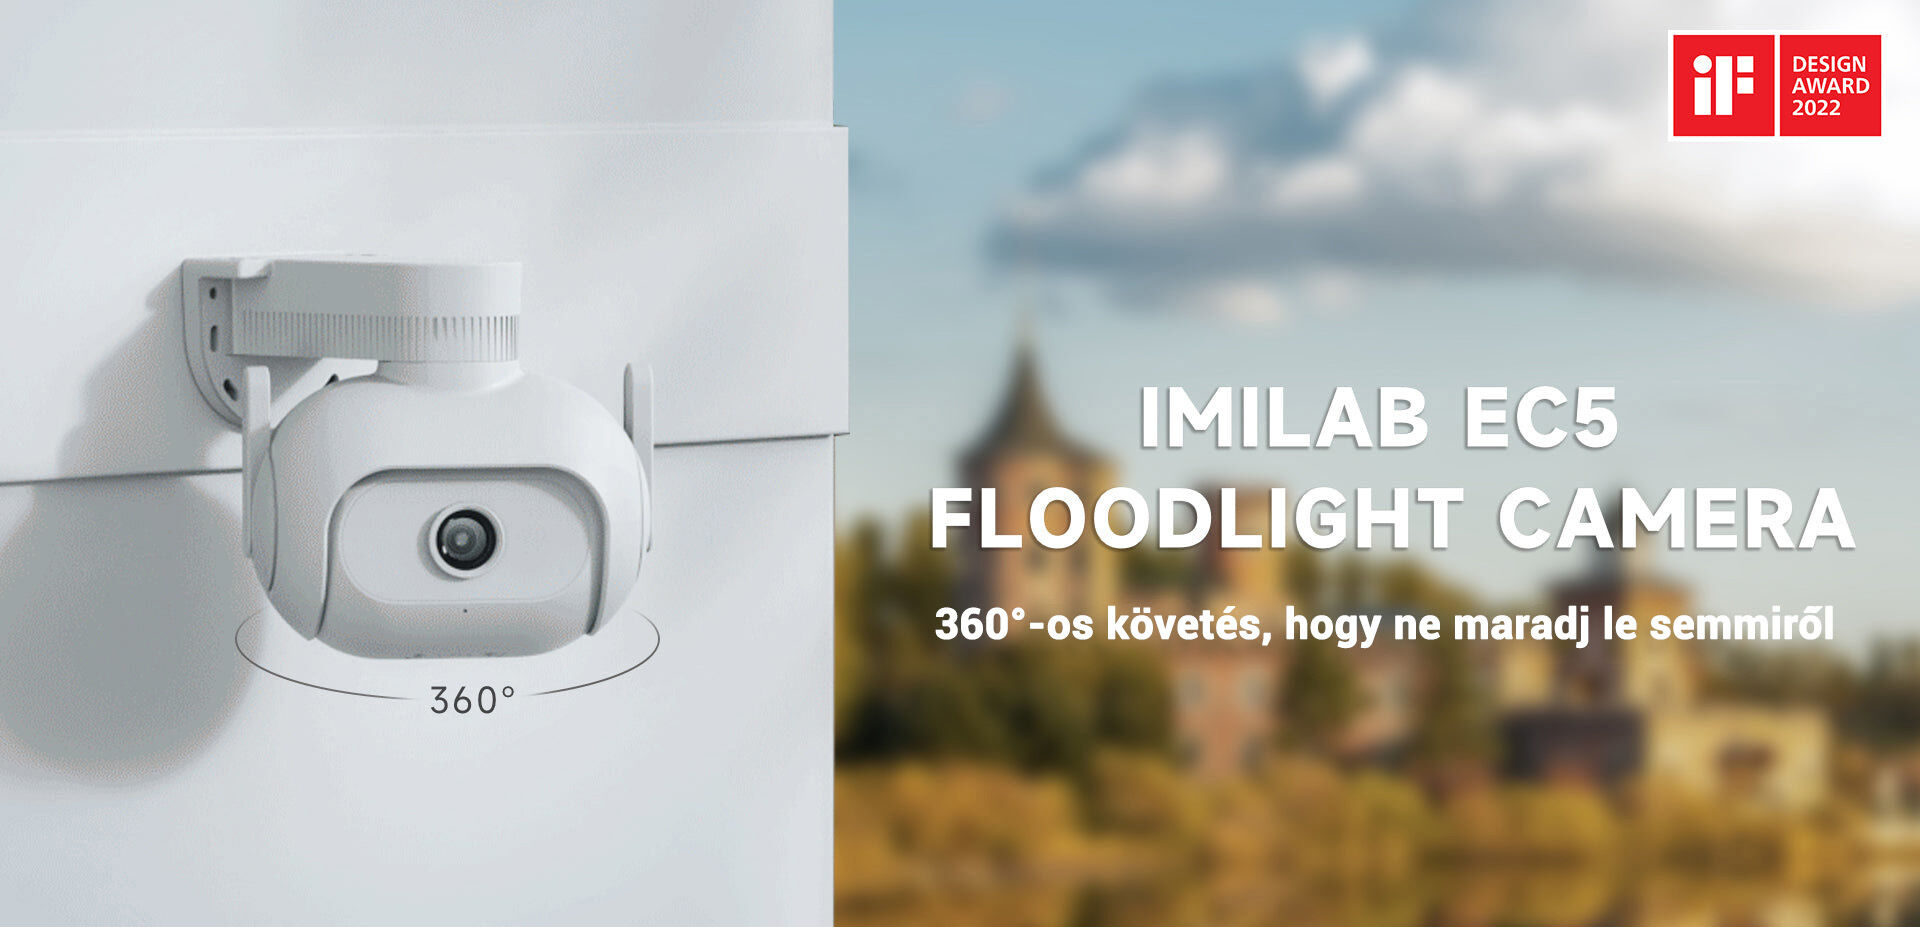 Imilab EC5 Floodlight Camera kültéri WiFi kamera - CMSXJ55A